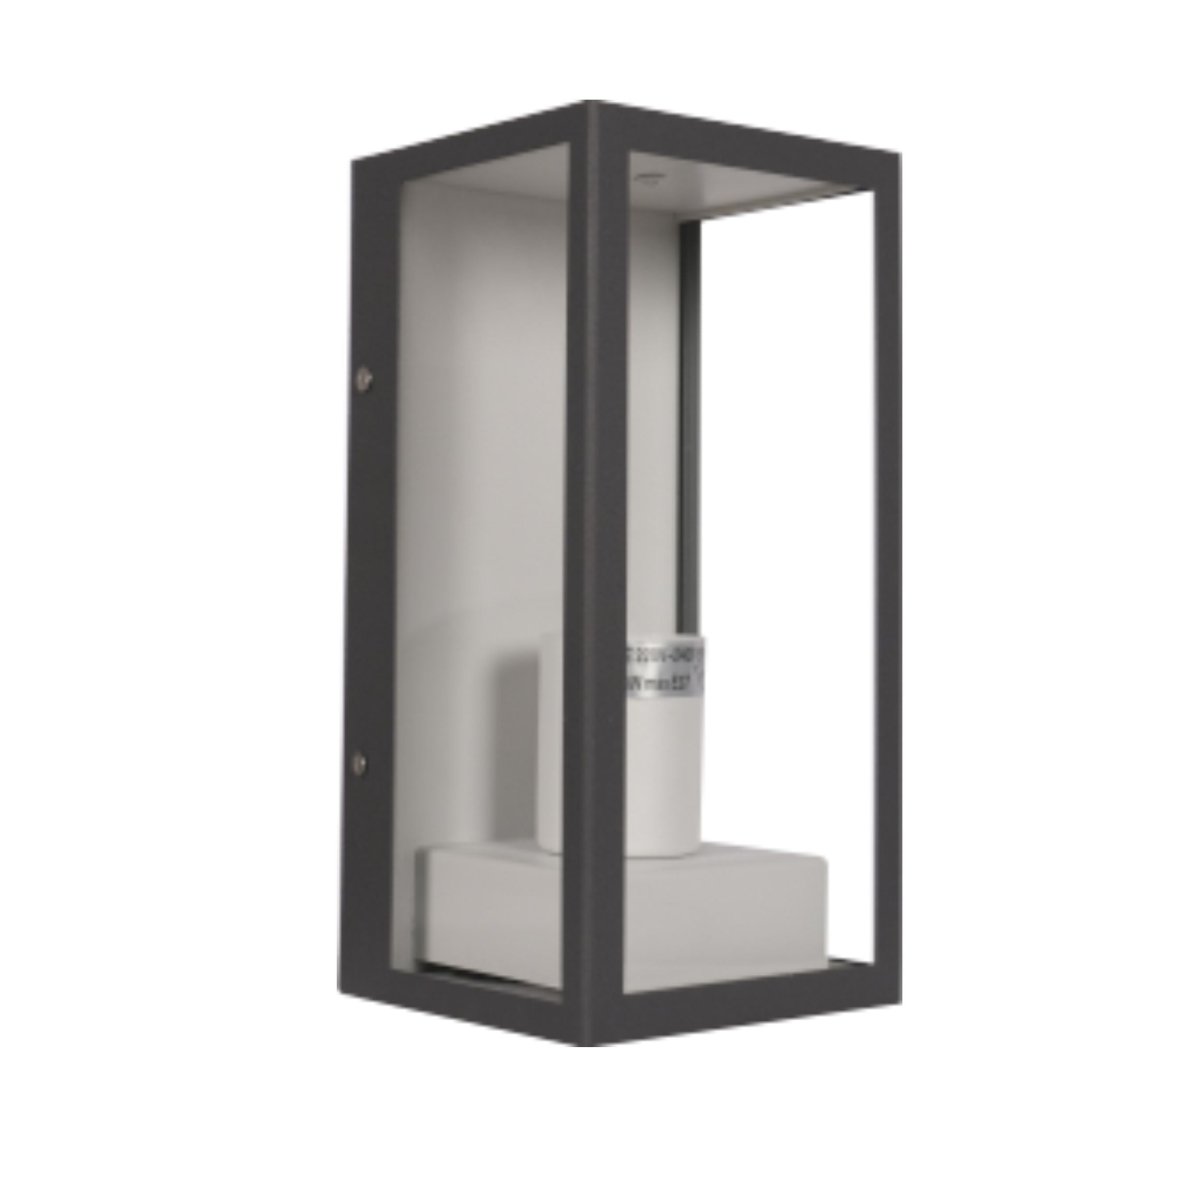 Main image of Modern Lantern Cuboid Wall Lamp Upward Base Grey&White Clear Glass E27